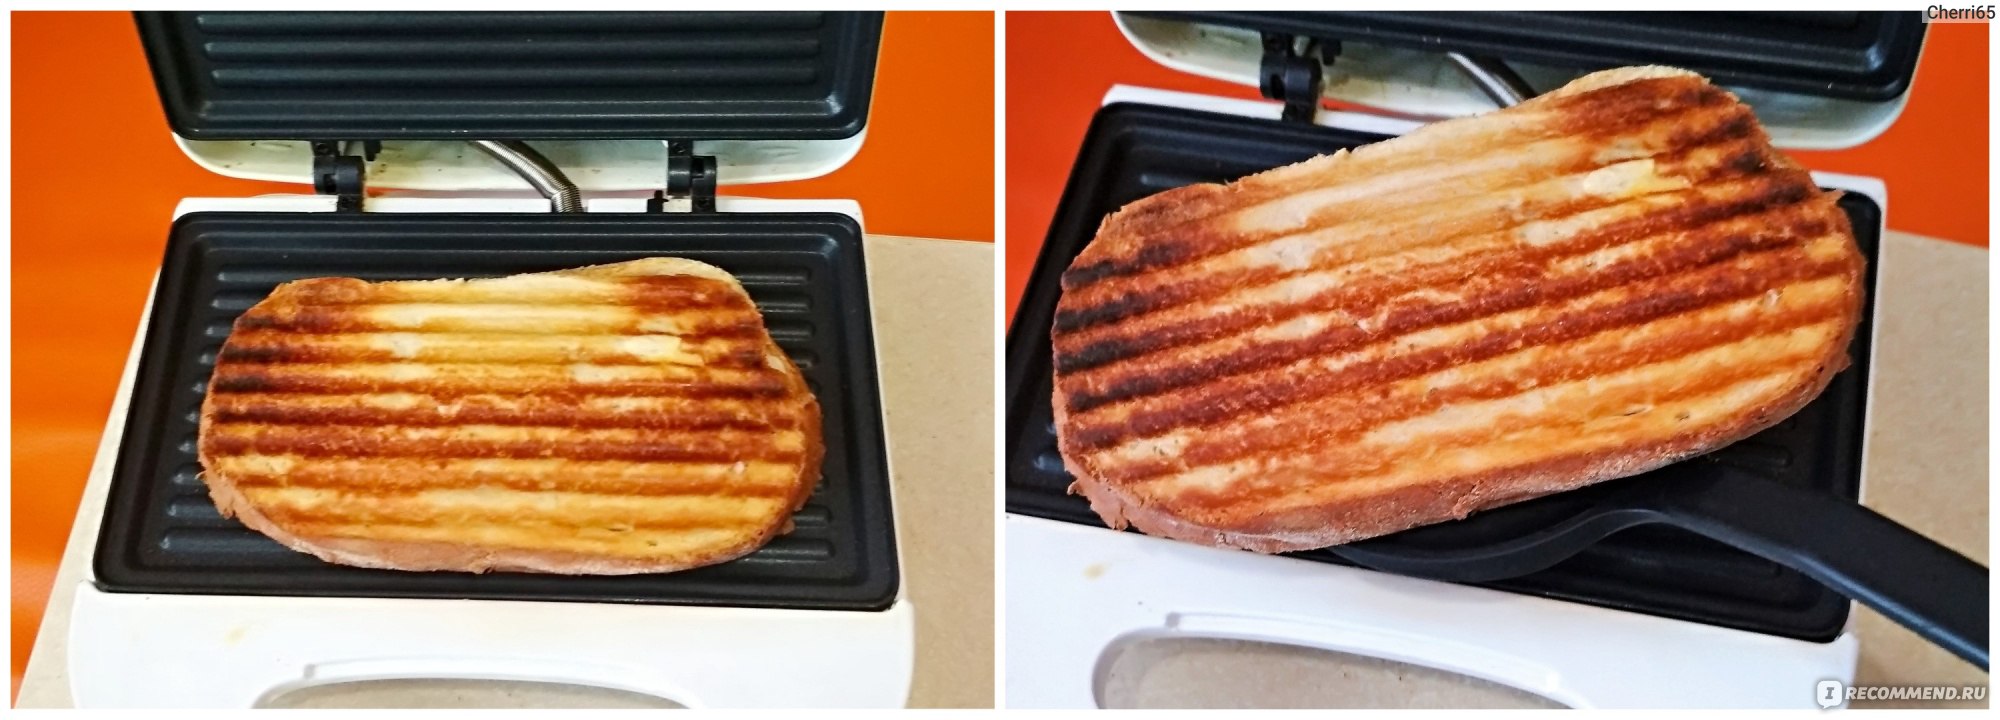 Какие есть рецепты приготовлния сэндвичей в тостере?